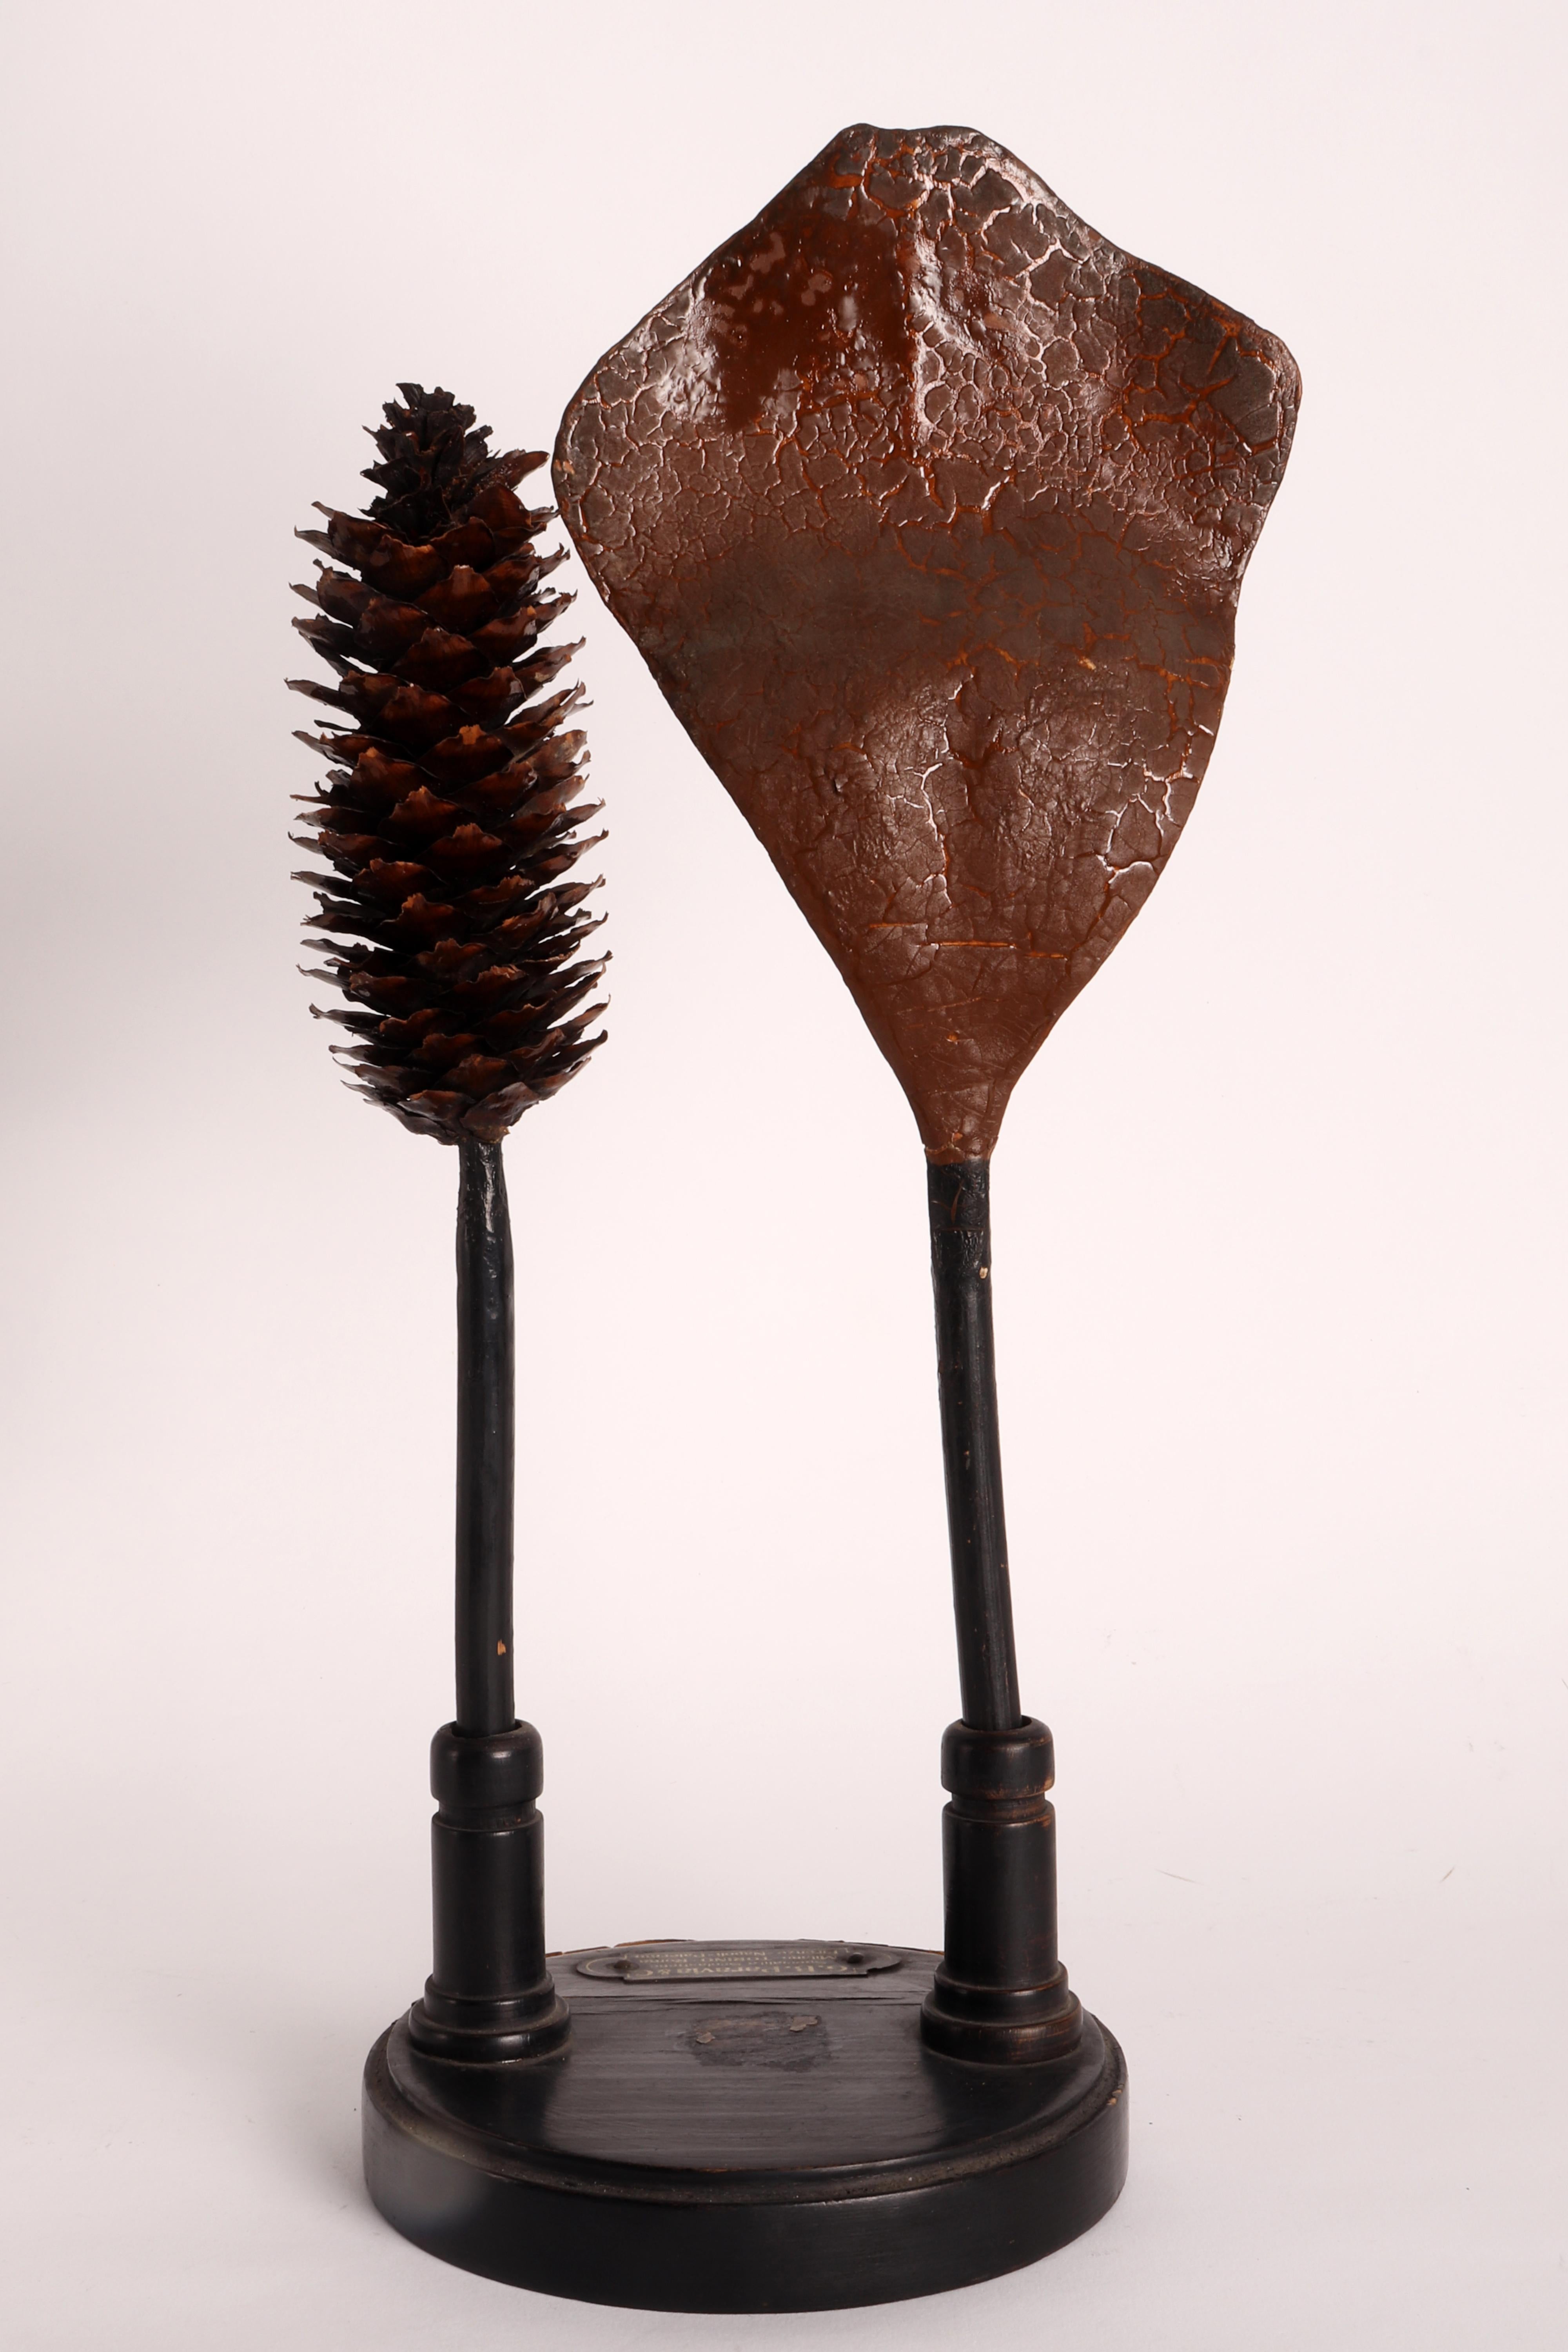 Rare exemple de maquette botanique à usage didactique du professeur T. Ferraris, représentant un strobilus (naturel) et une écaille avec des ovules (environ 12 fois agrandis) de l'épicéa (Picea excelsa Lk), une famille de conifères. Fait de papier